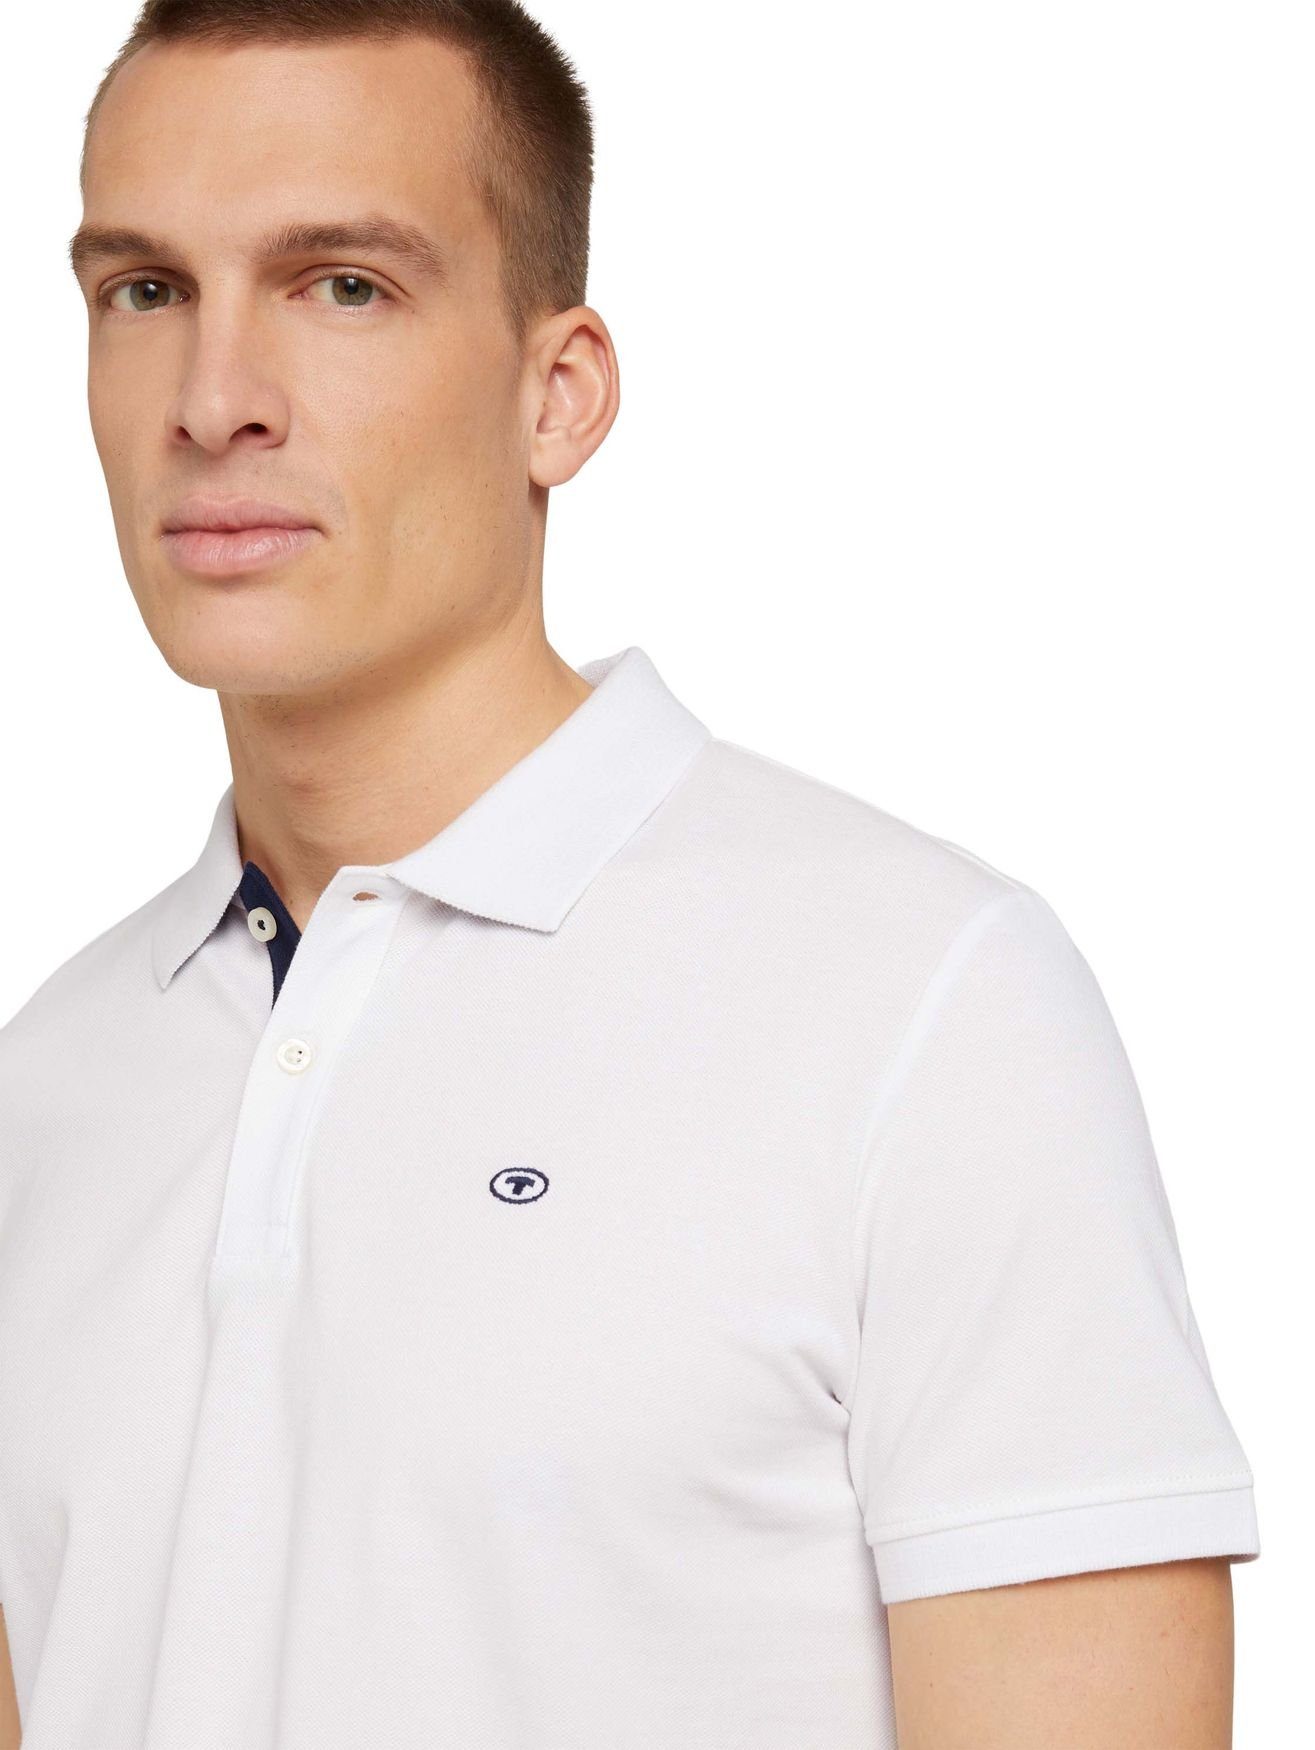 Poloshirt TAILOR TOM in Polo BASIC 5339 POLO Shirt Weiß